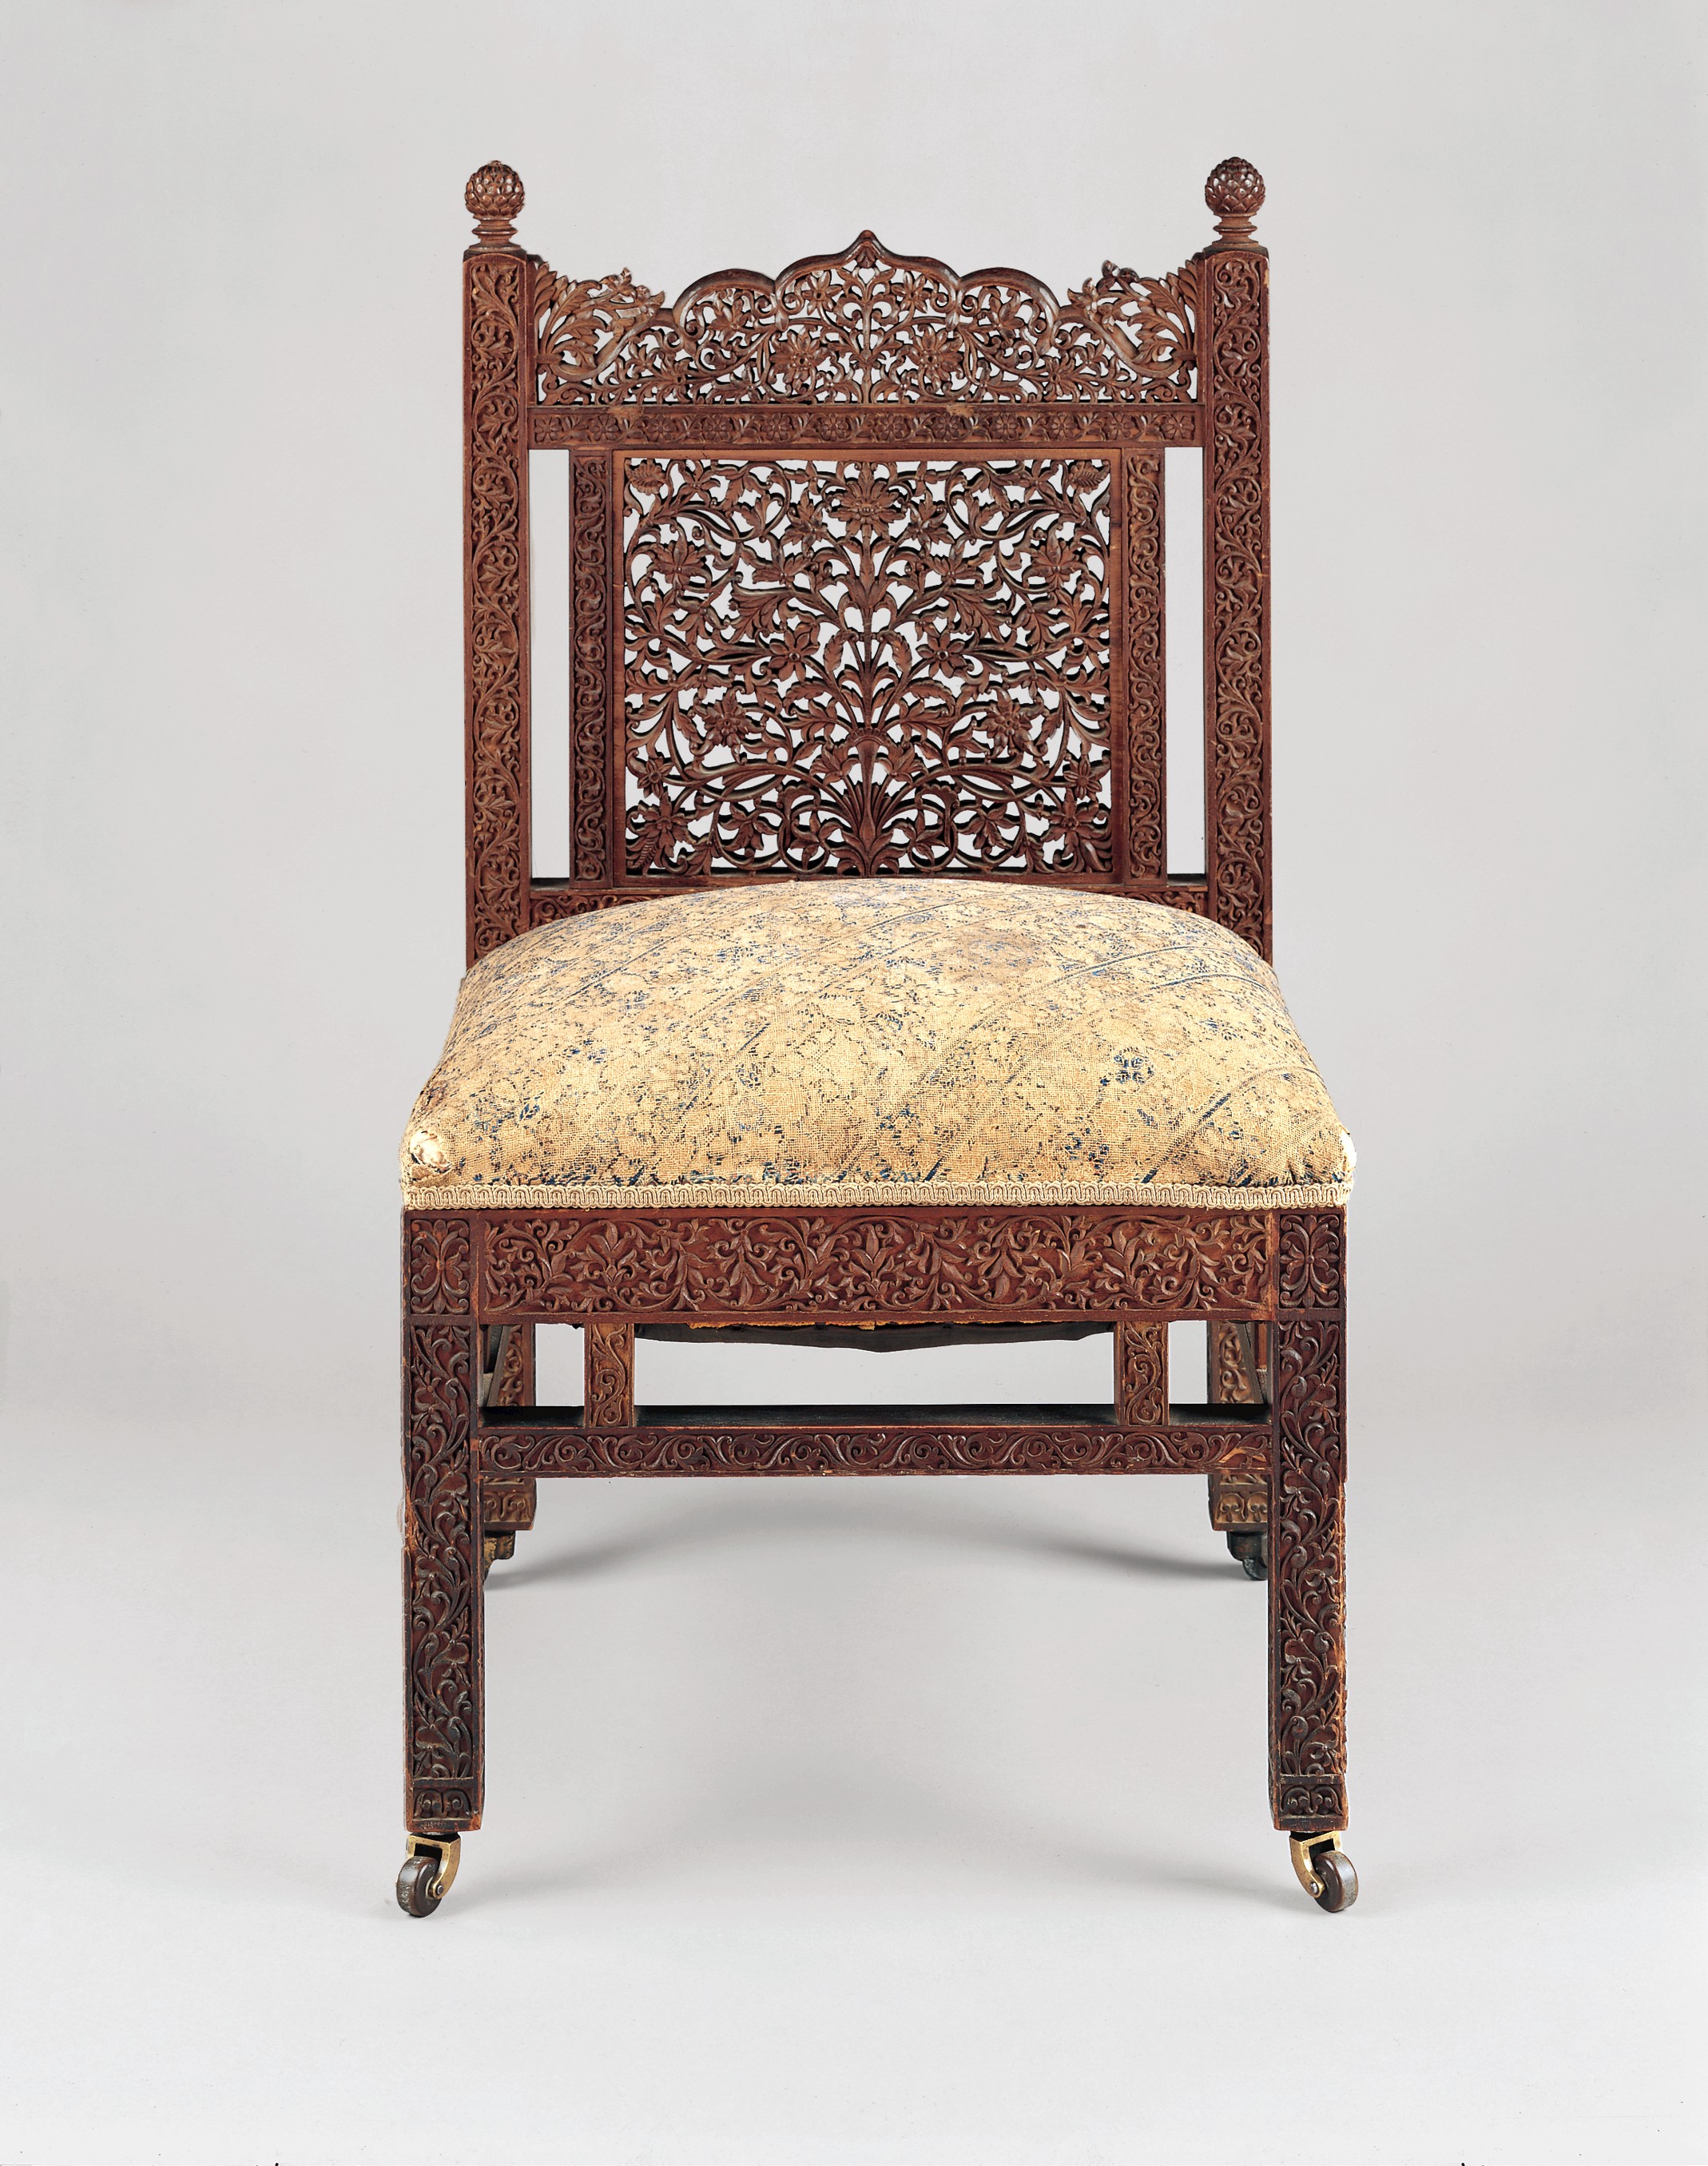 의자 by Lockwood de Forest - c. 1881-6 - 82.2 x 46.4 x 47 cm 